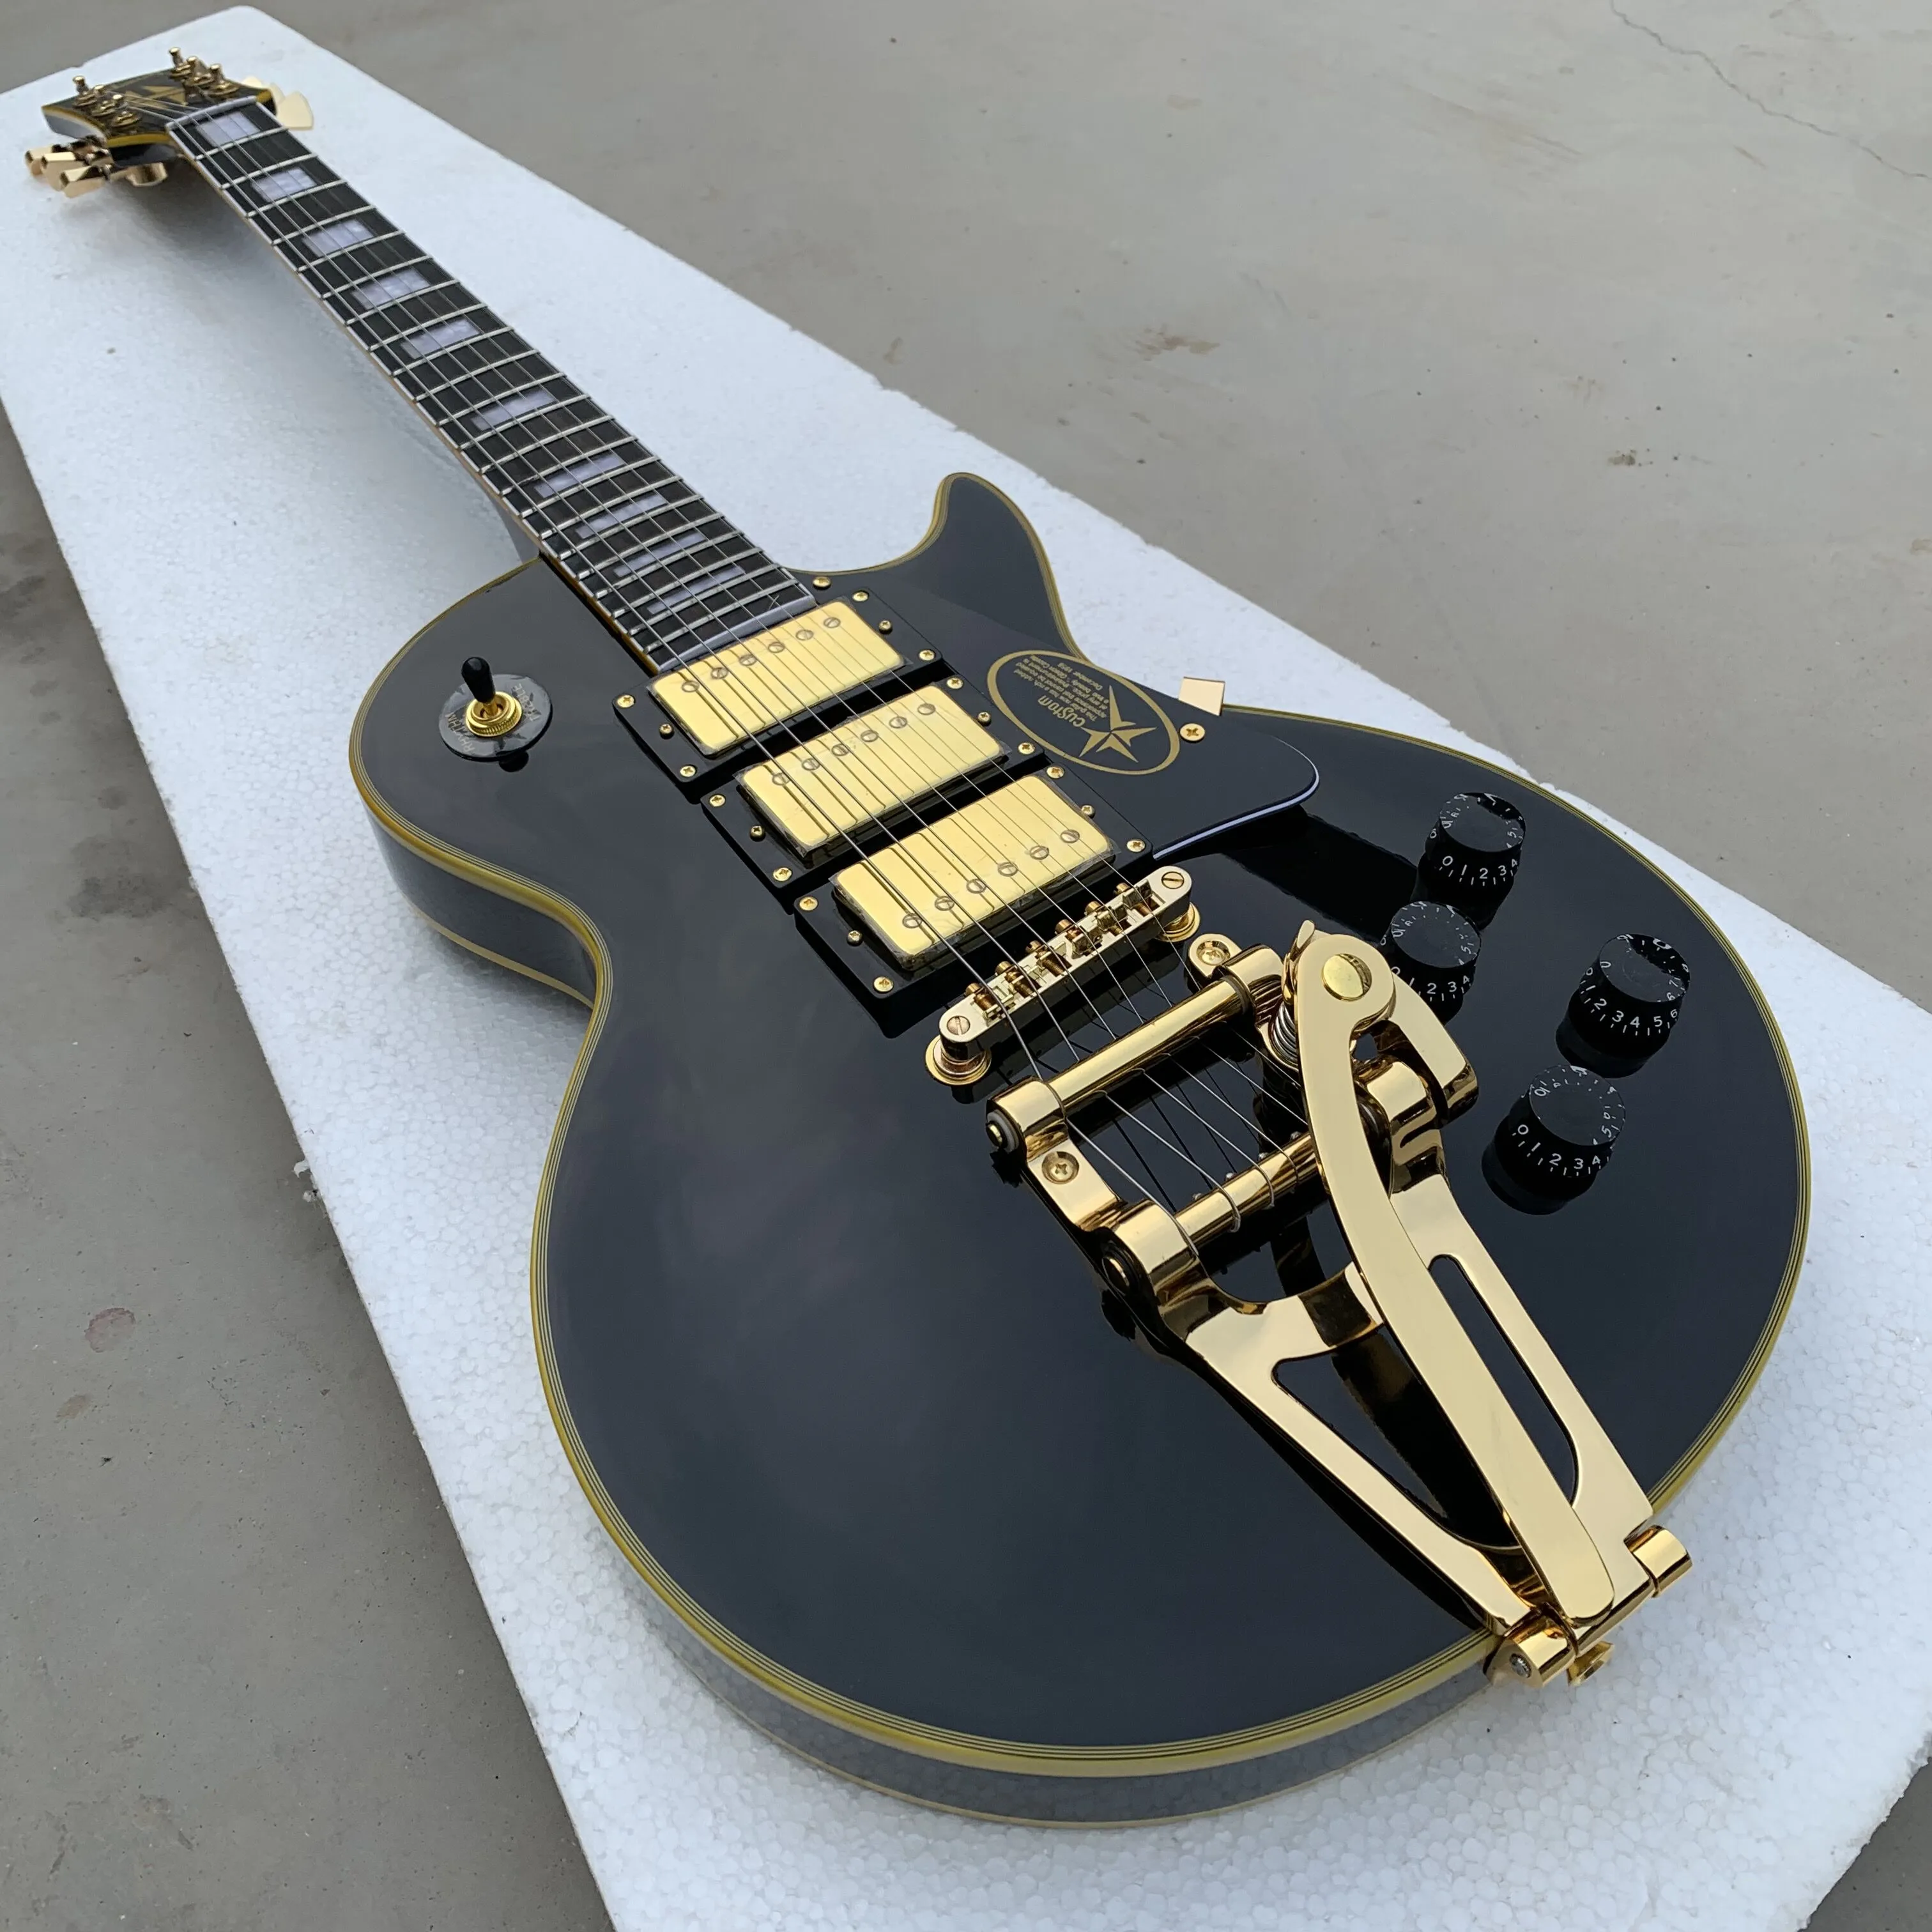 Promozione! 1957 Jimmy Page Signature Black Beauty Guitar Electric Giallo Giallo Body Body Body, Bigs Tremolo Bridge, Hardware d'oro, 3 pickup